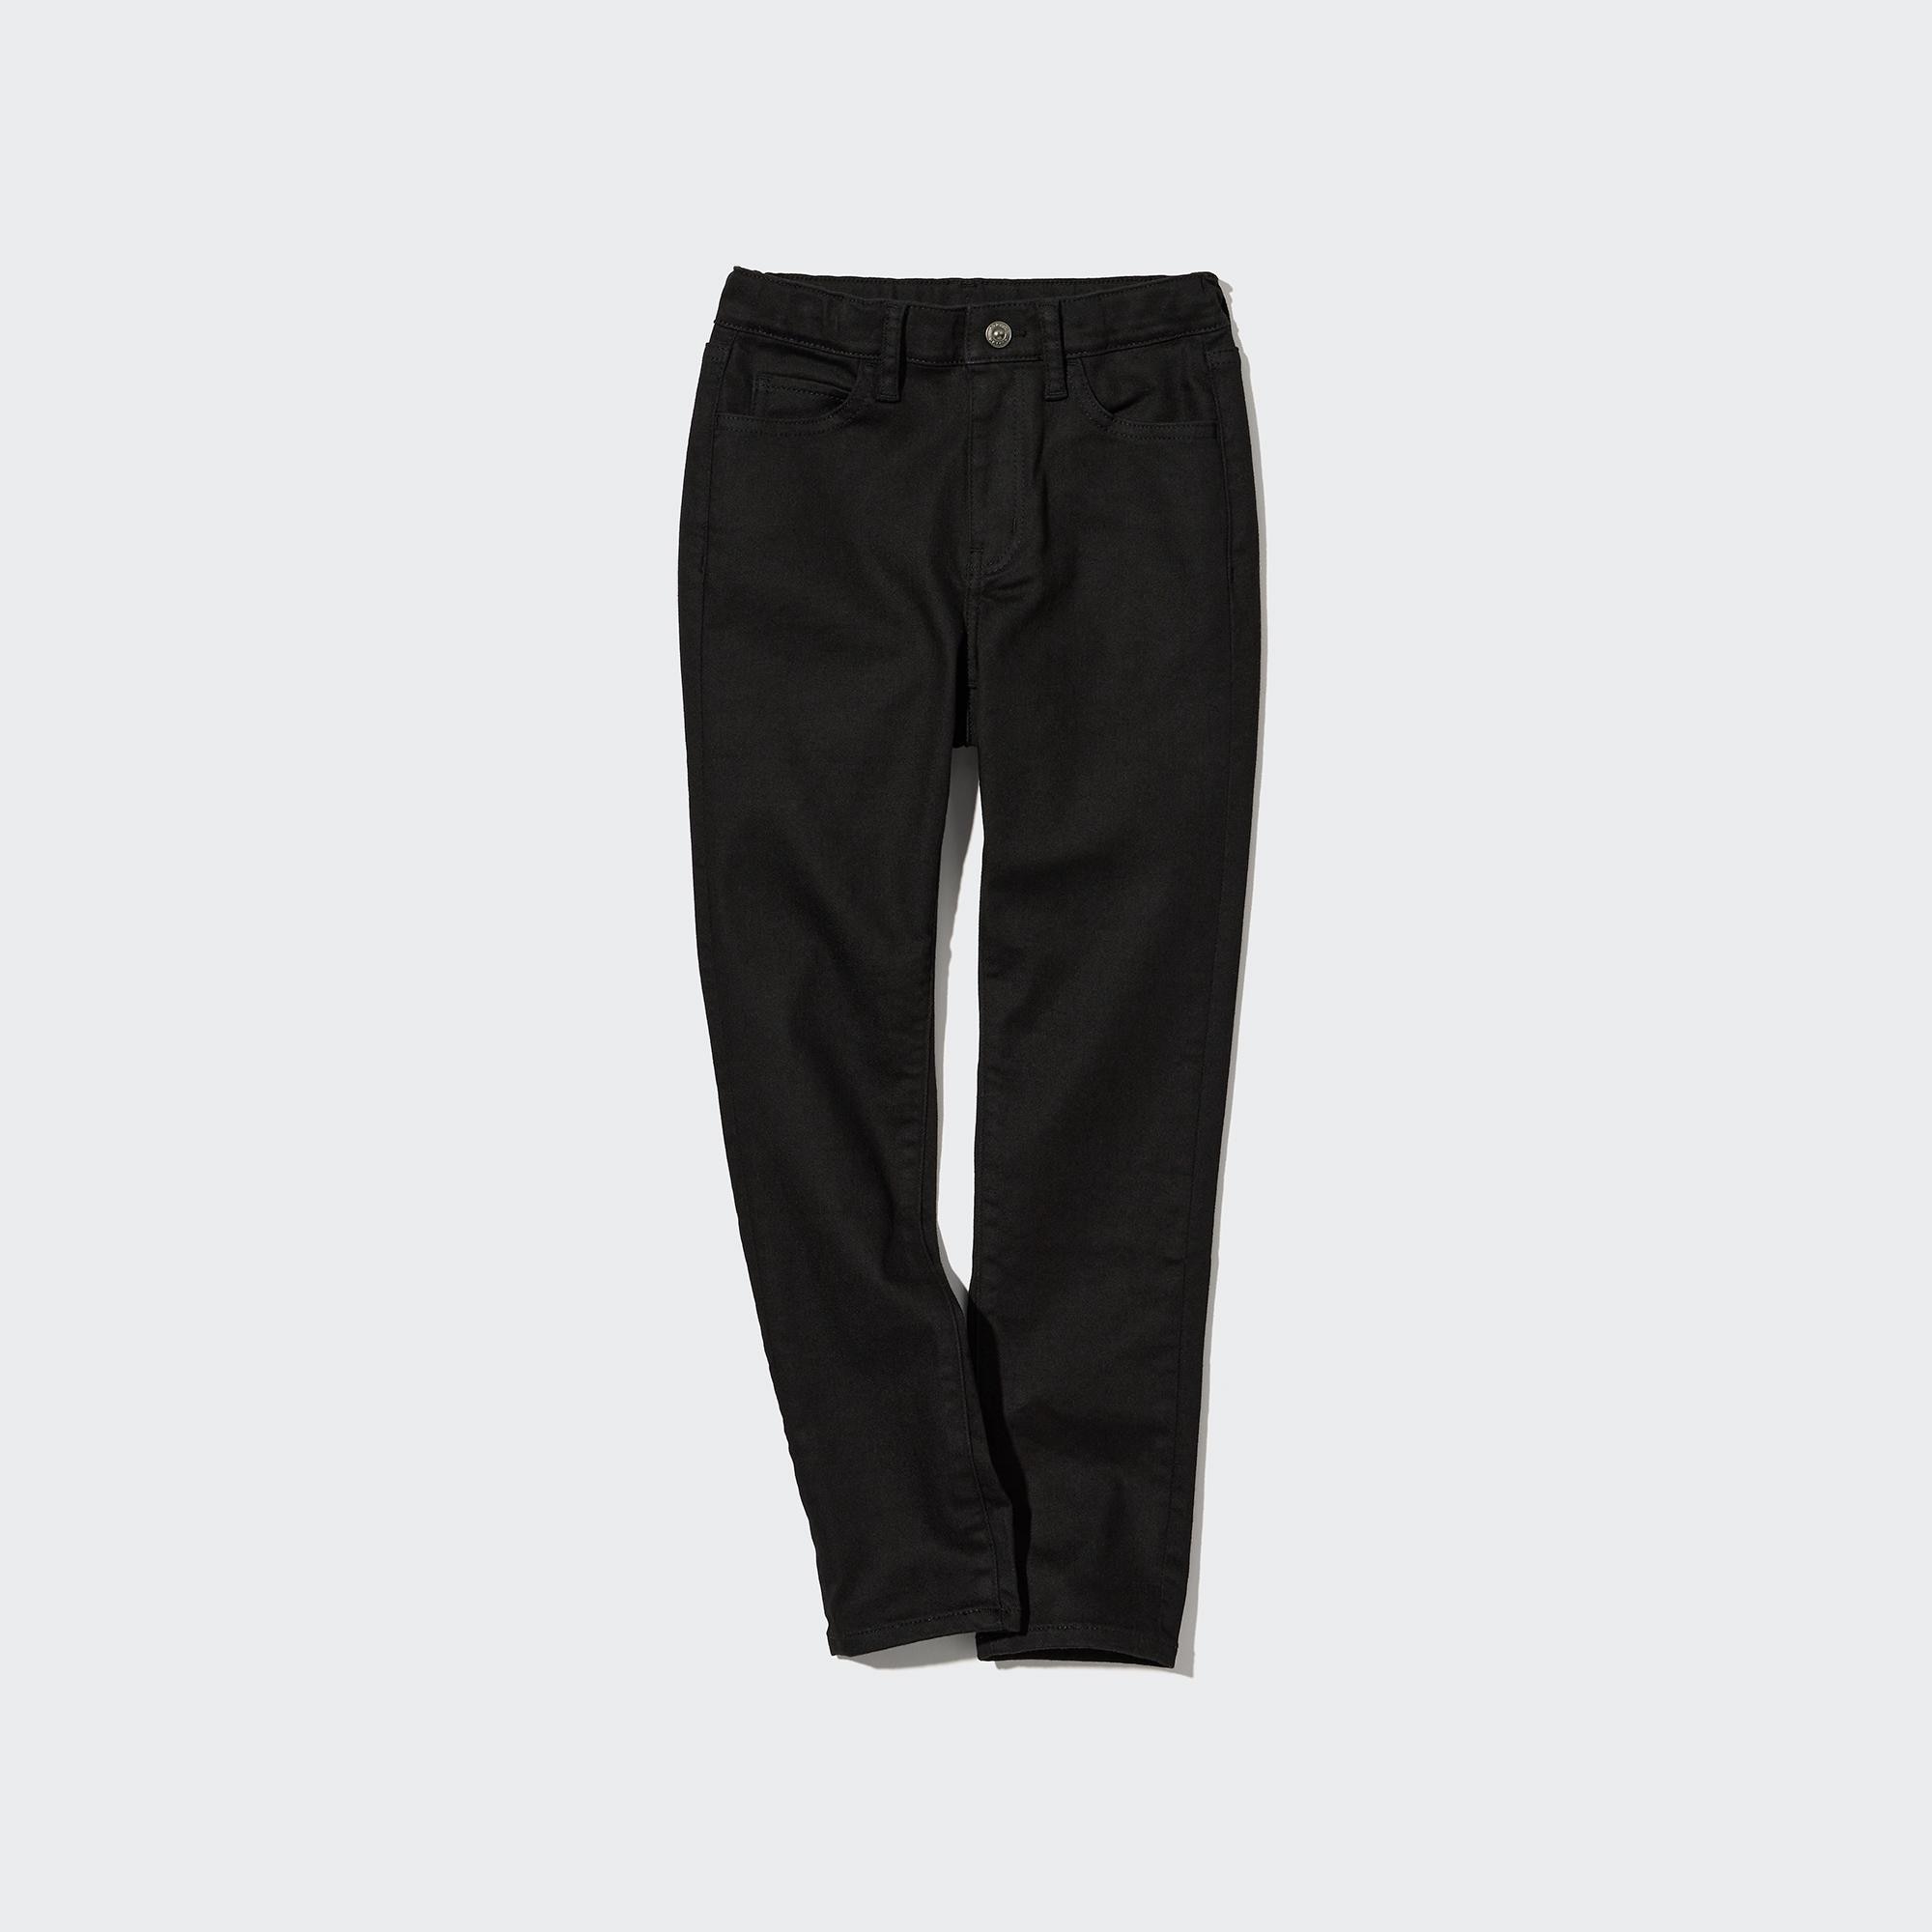 Cotone Jeans Ultra Elasticizzati Soft Con Zip Bambino Uniqlo Bambina Abbigliamento Pantaloni e jeans Pantaloni Joggers 